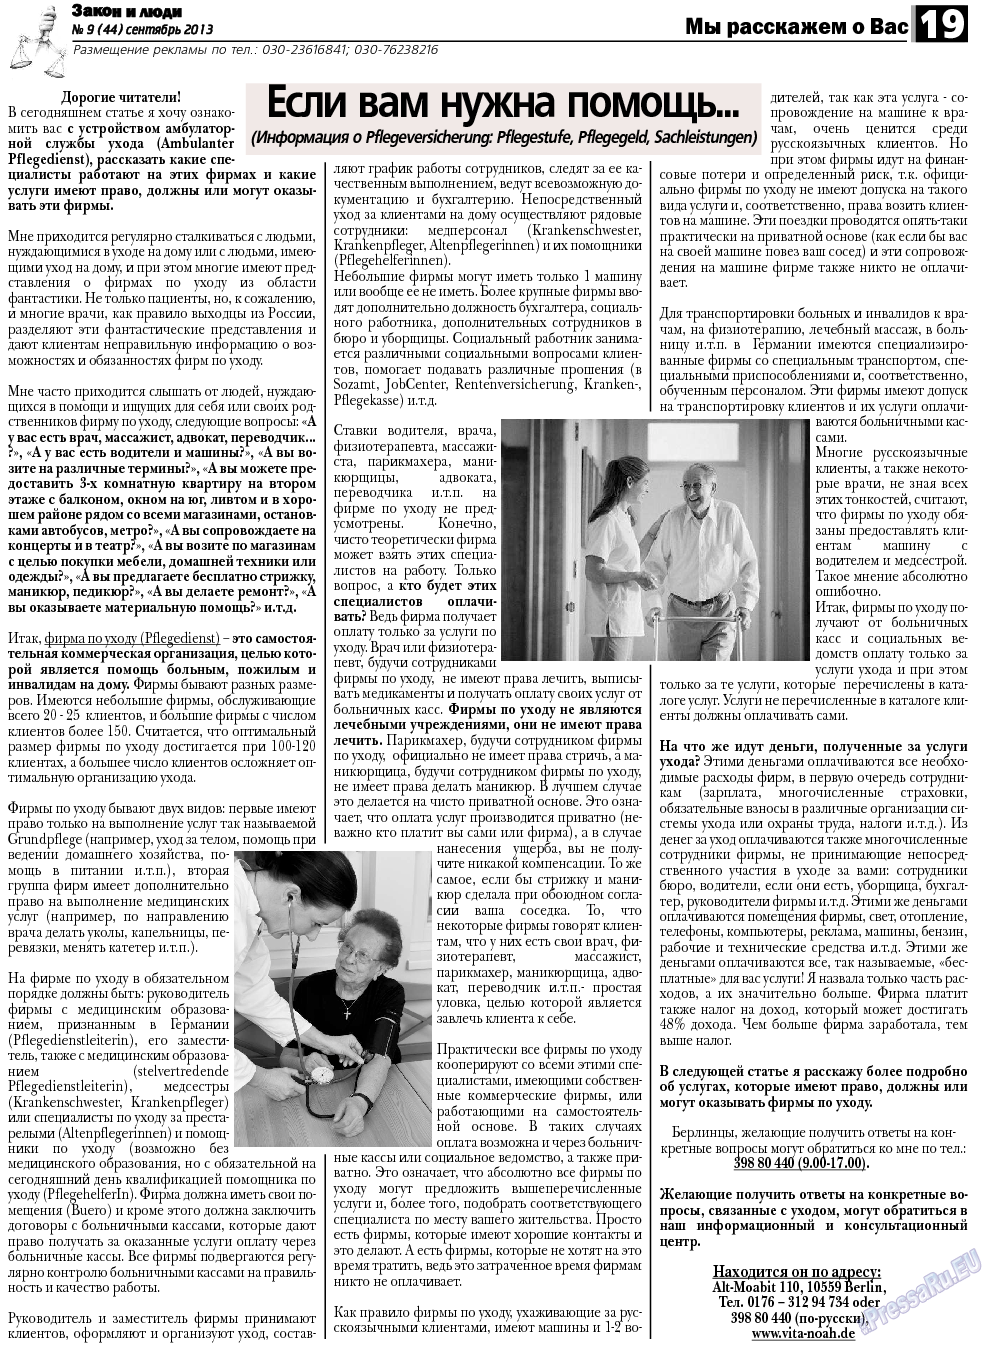 Закон и люди, газета. 2013 №9 стр.19